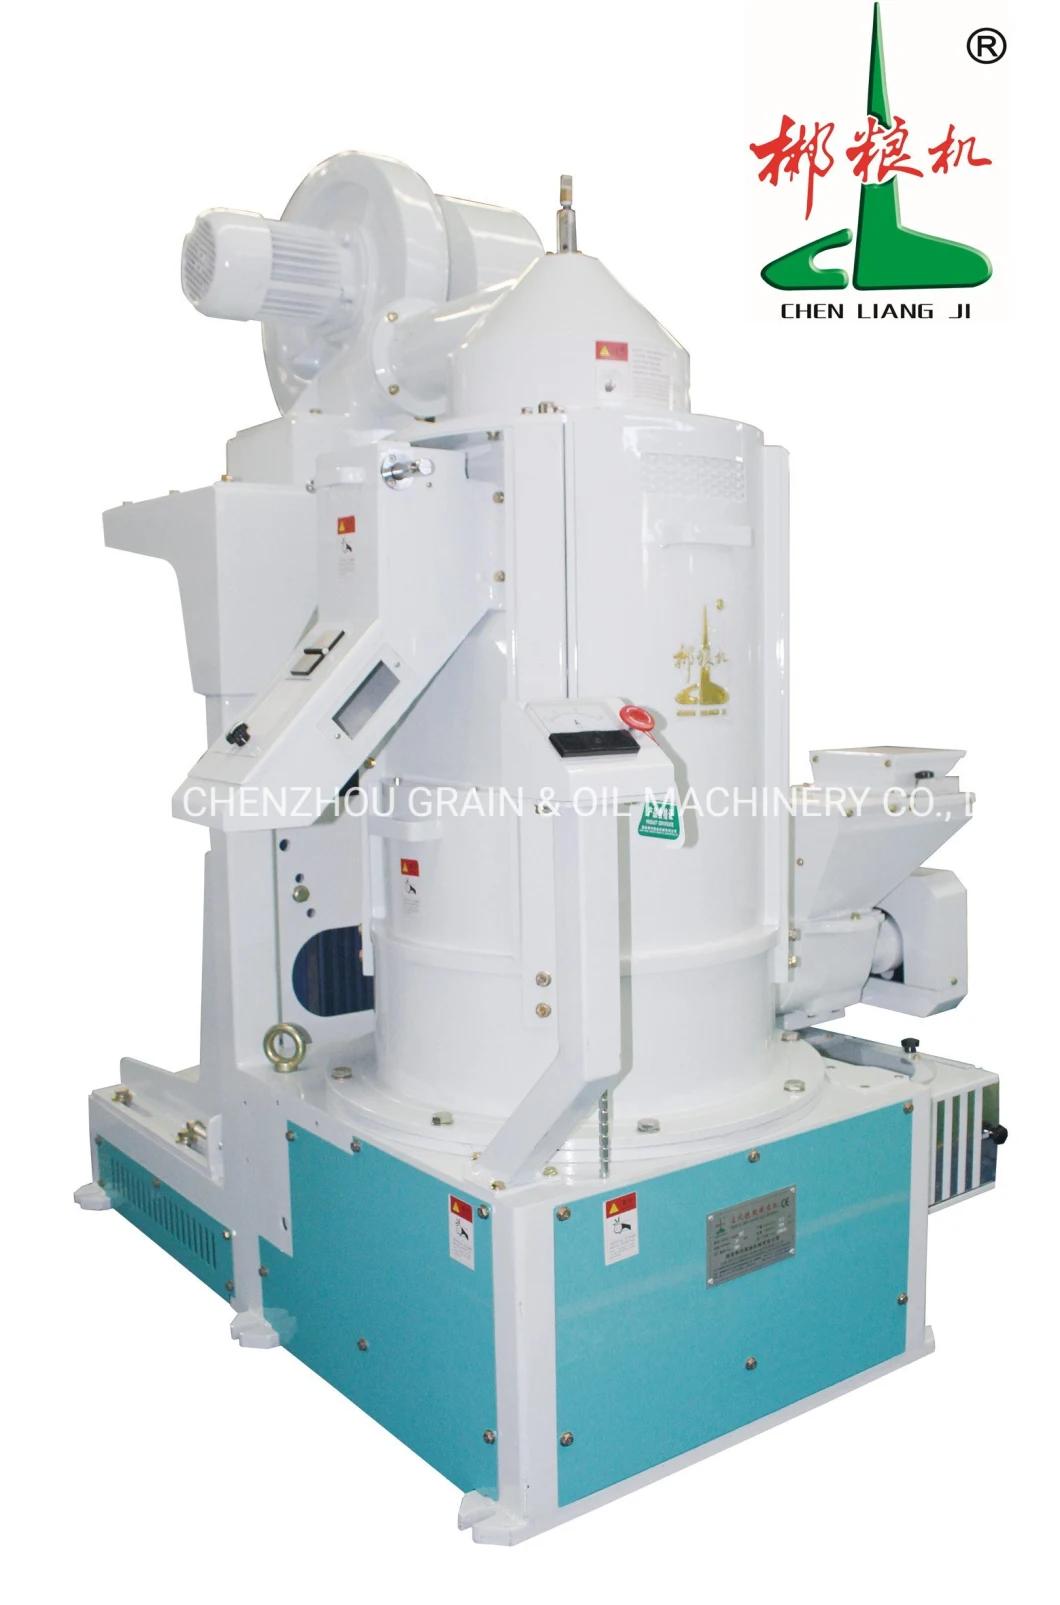 Brand New Clj Vertical Iron Roller Whitener Mntl30 Rice Whitener Rice Mill Machine for Rice Plant